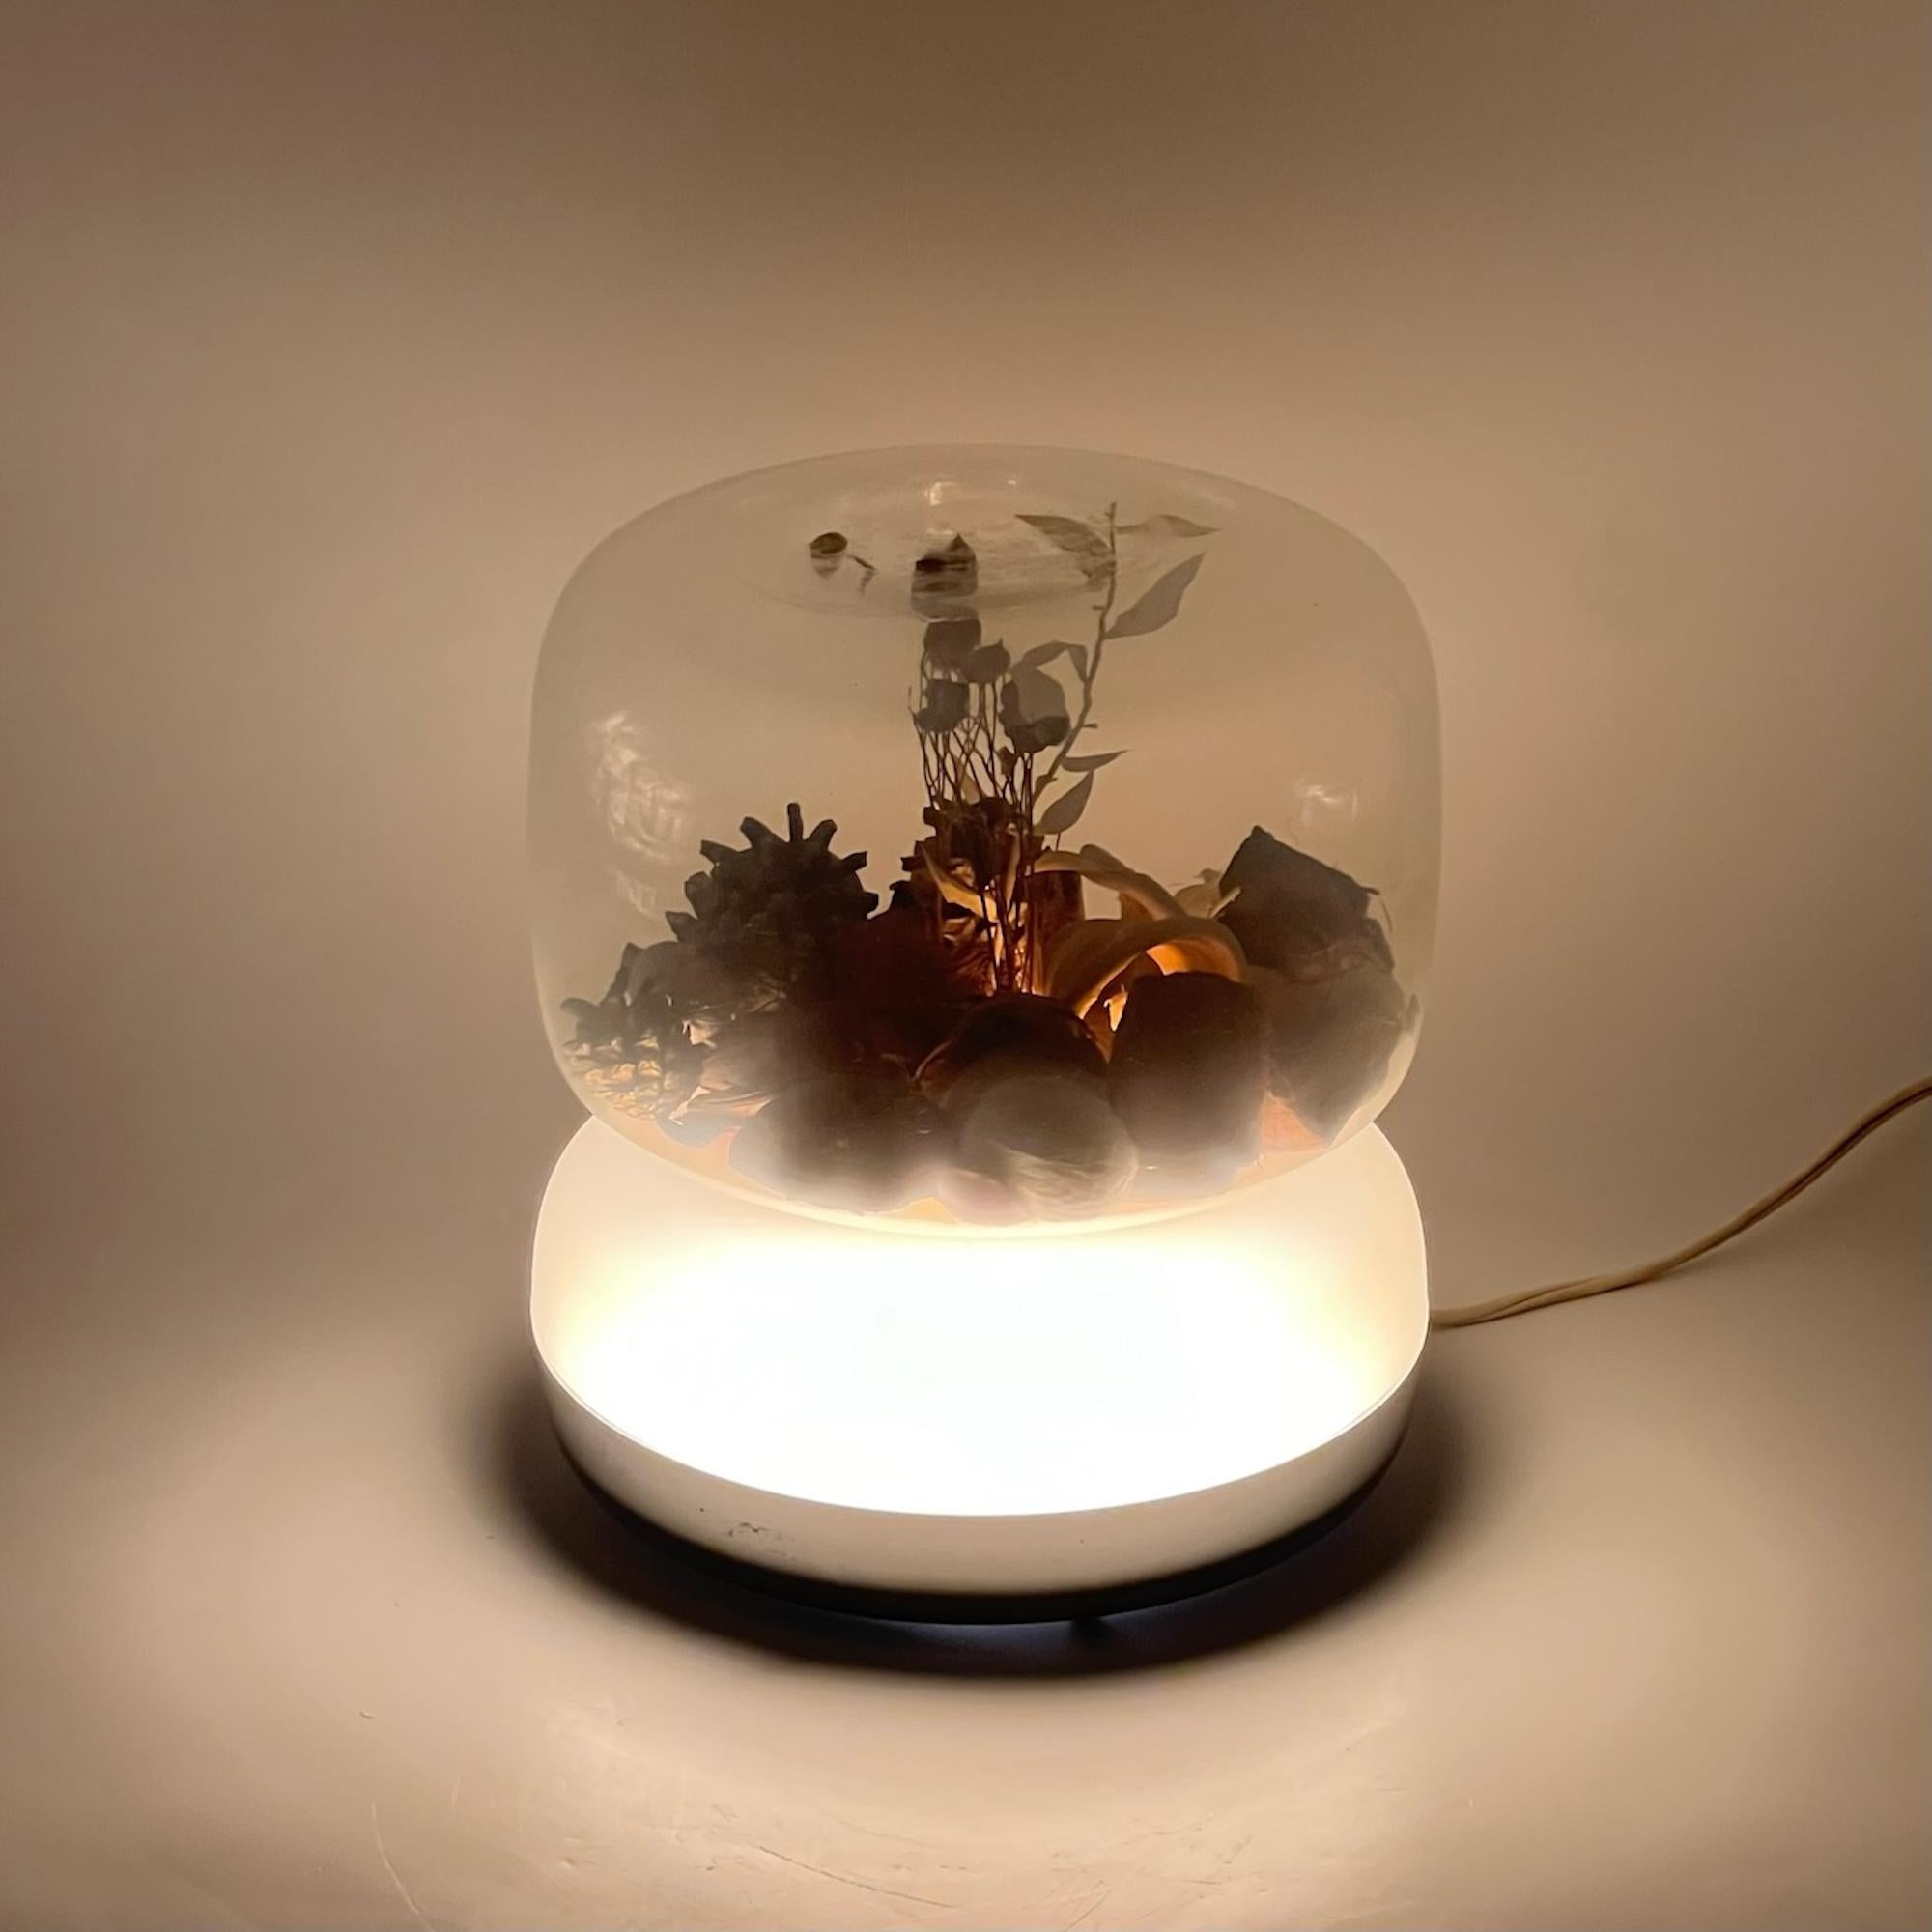 Diese seltene Space-Age-Lampe mit ihrem cremefarbenen Kunststoffsockel und der großen klaren Glaskugel entführt Sie in eine Welt voller faszinierender Beleuchtung. Das einzigartige Design dieser Leuchte ermöglicht eine fesselnde Kombination aus